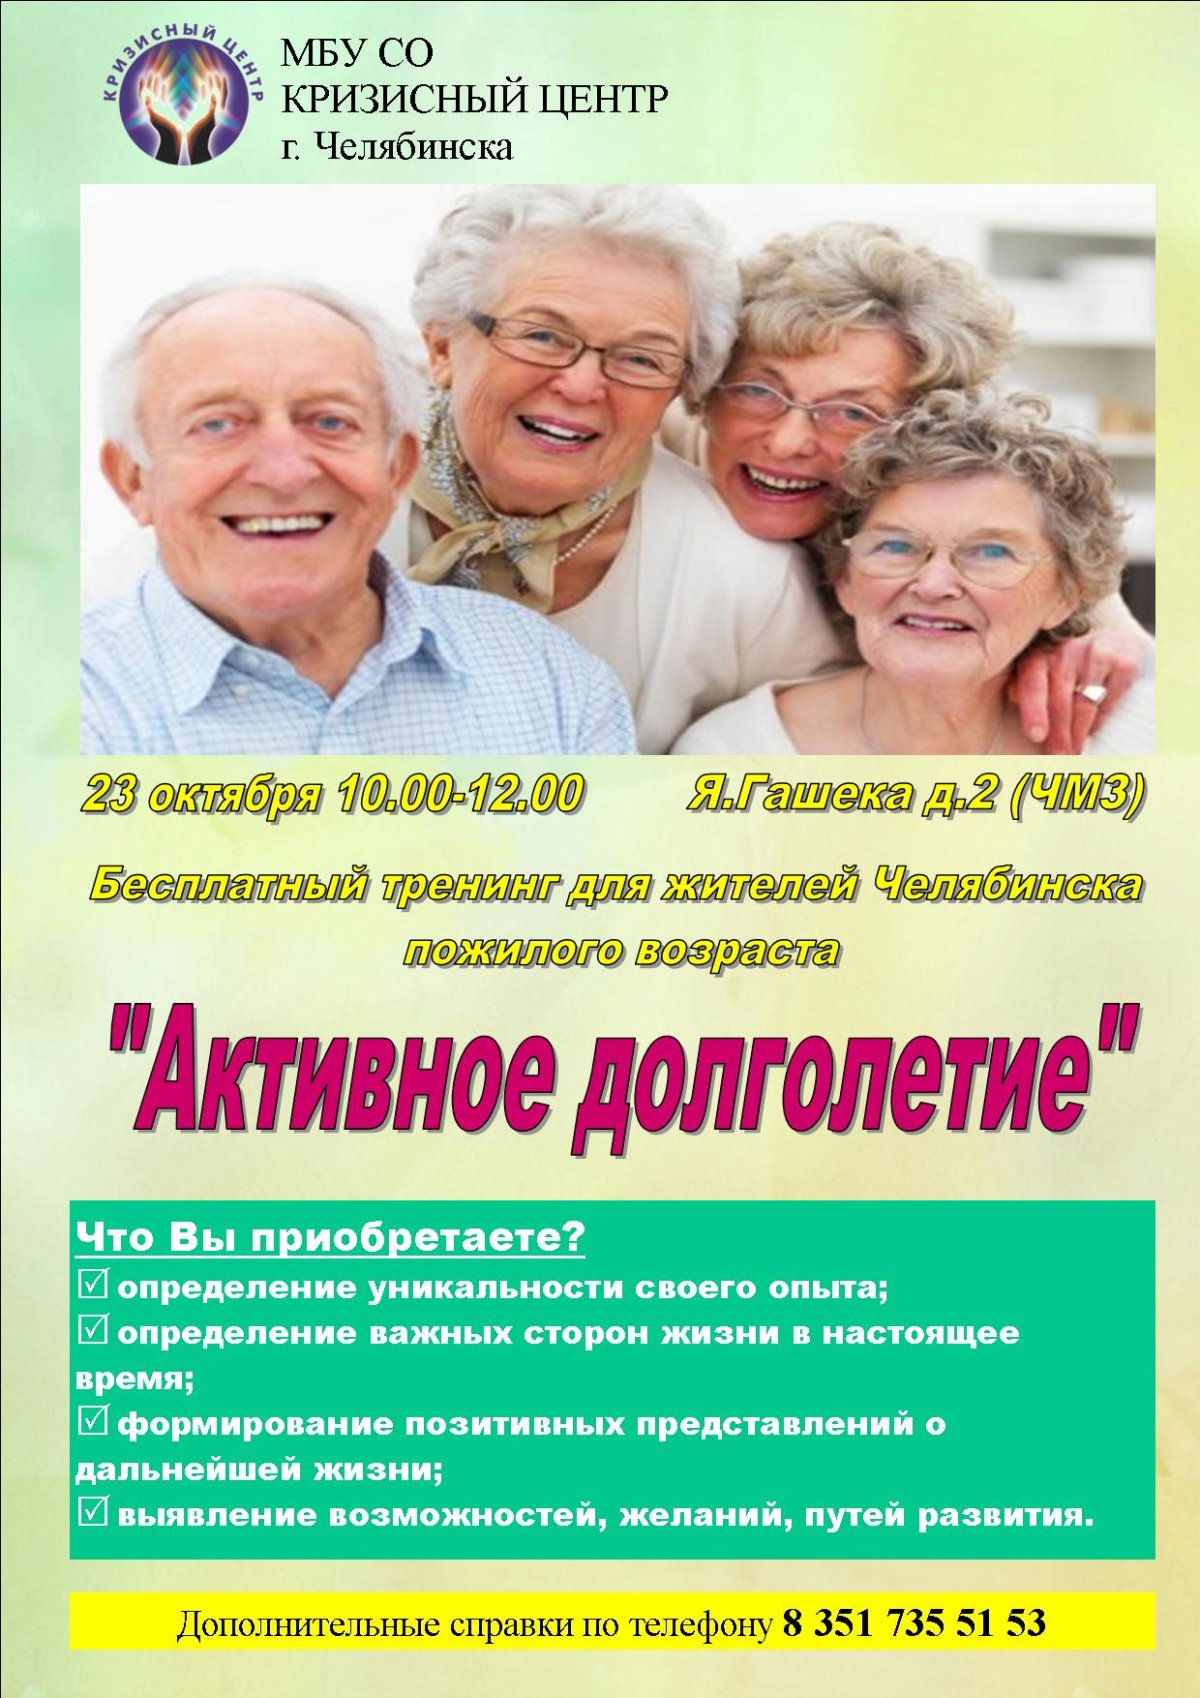 Активное долголетие телефон. Активное долголетие программа. Реклама ко Дню пожилых людей. Приглашение на активное долголетие. Приглашаем в активное долголетие.